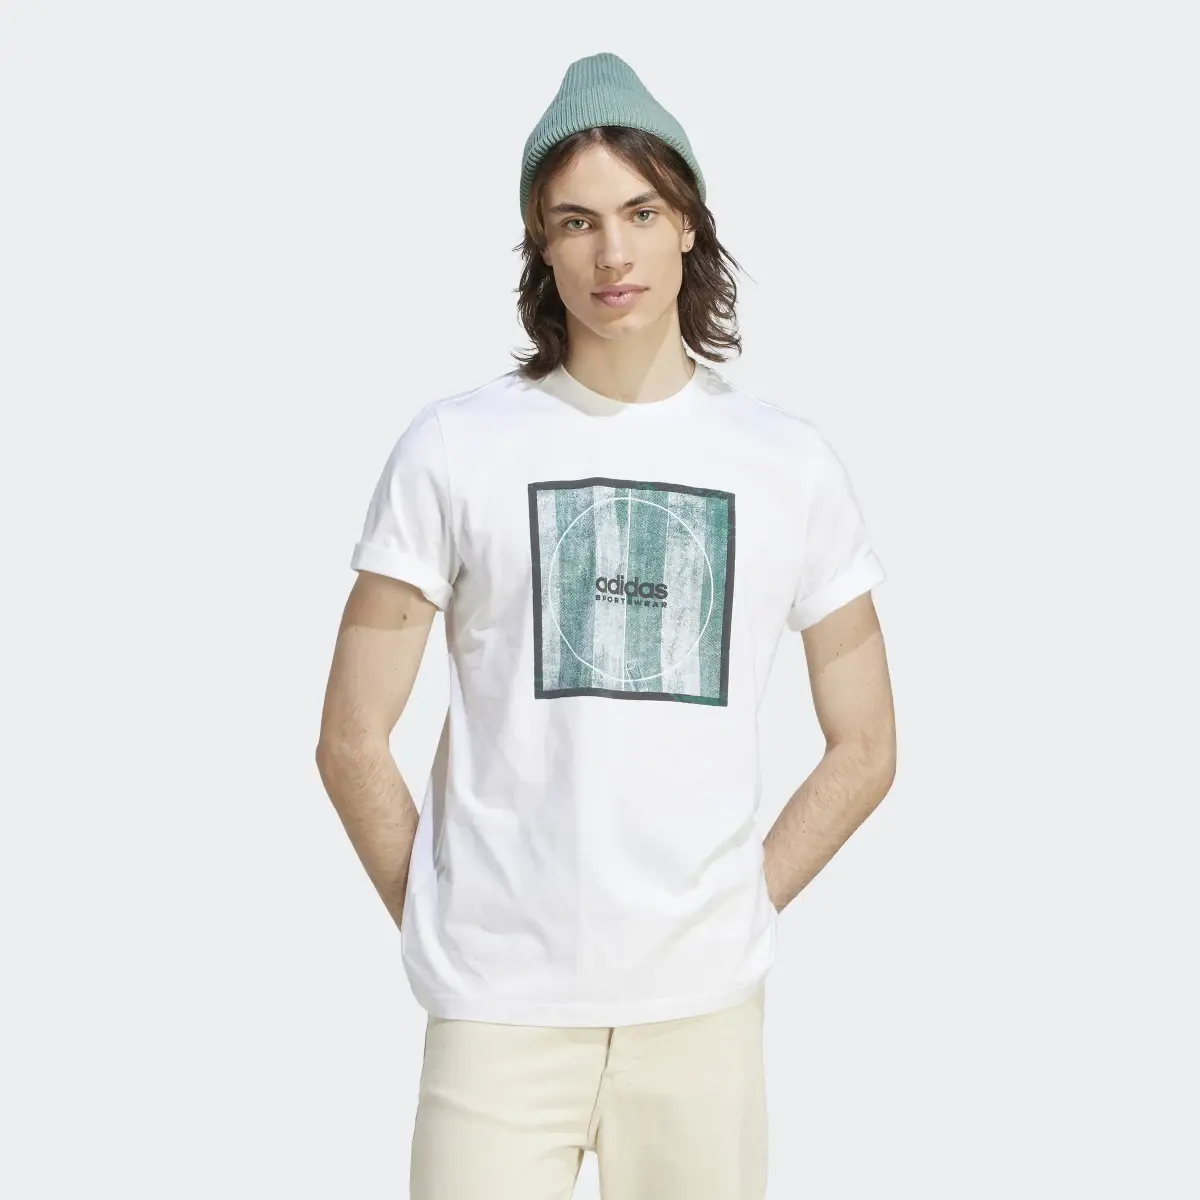 Adidas Tiro Box Graphic T-Shirt. 2